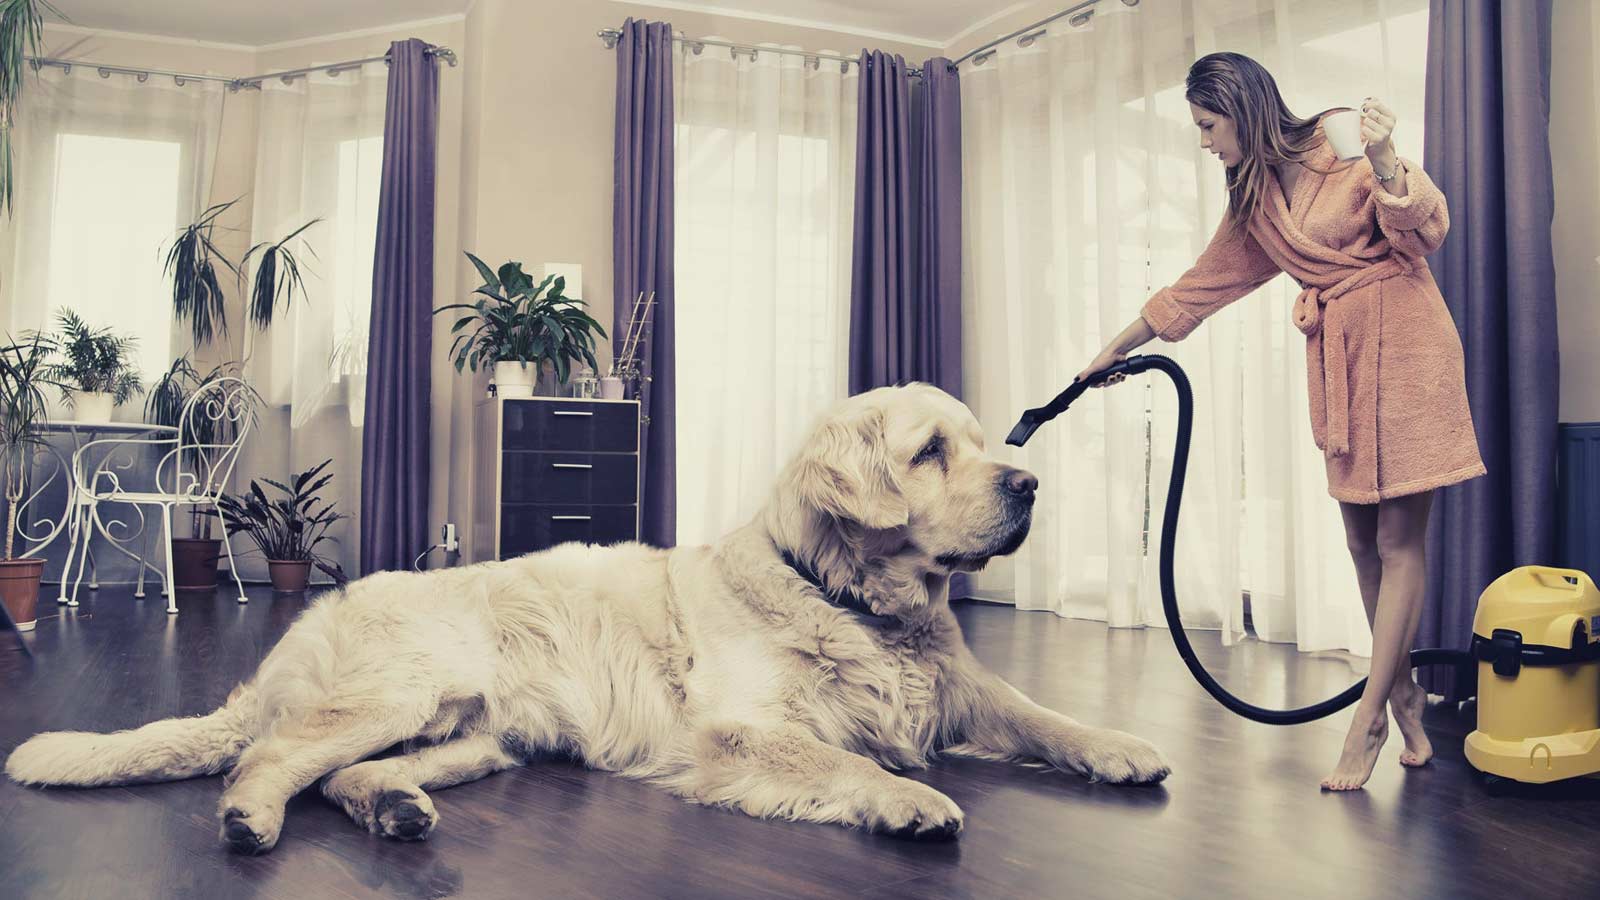 Una giovane donna fa le pulizie di casa con un grosso cane, la ricercatezza comunicativa